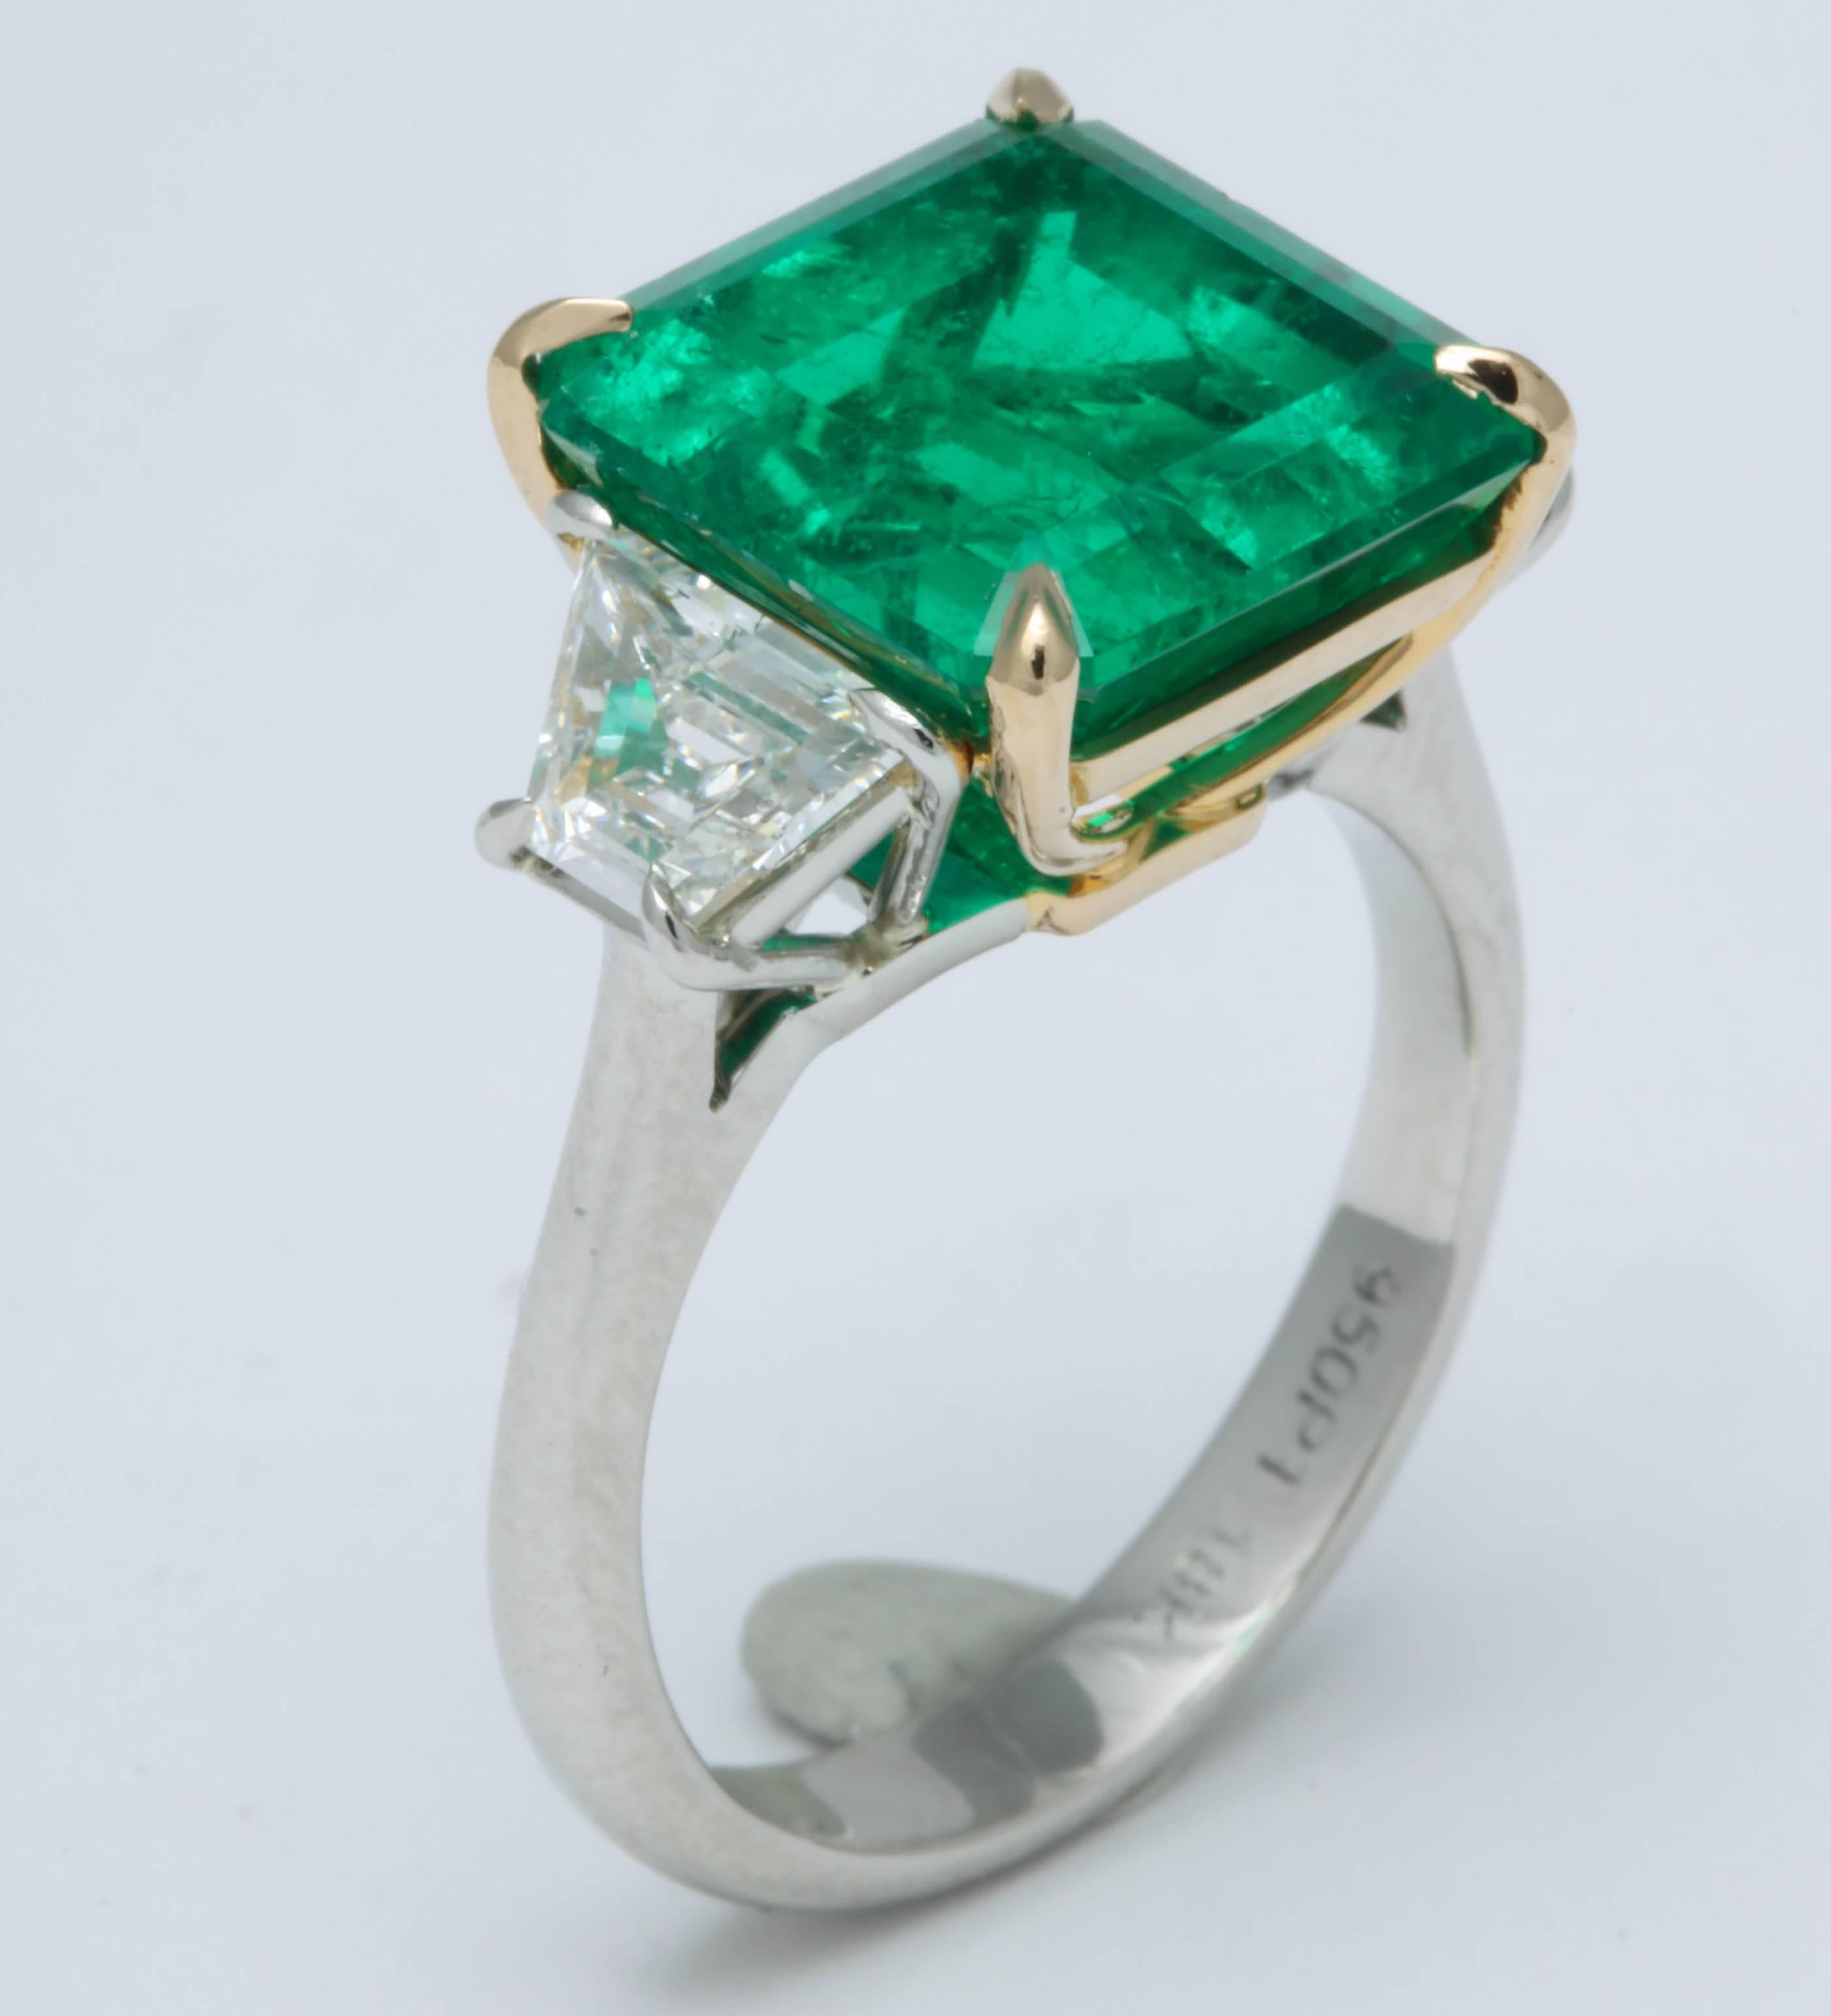 6 carat emerald price